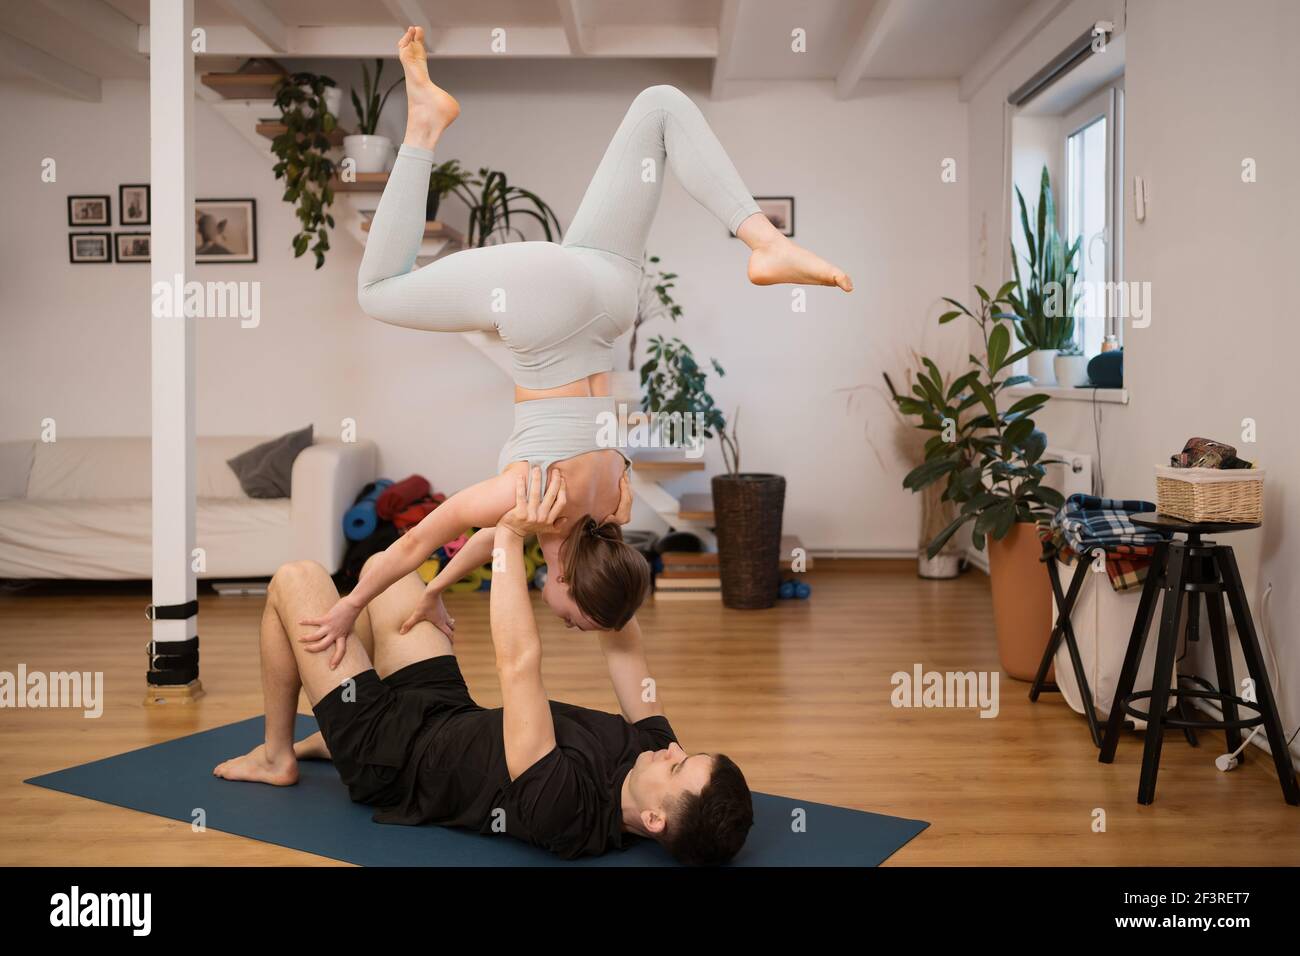 Junges Paar, das gemeinsam Yoga praktiziert, zu Hause in einem modernen Interieur. Hobby, Zweisamkeit, gesunder Lebensstil Stockfoto